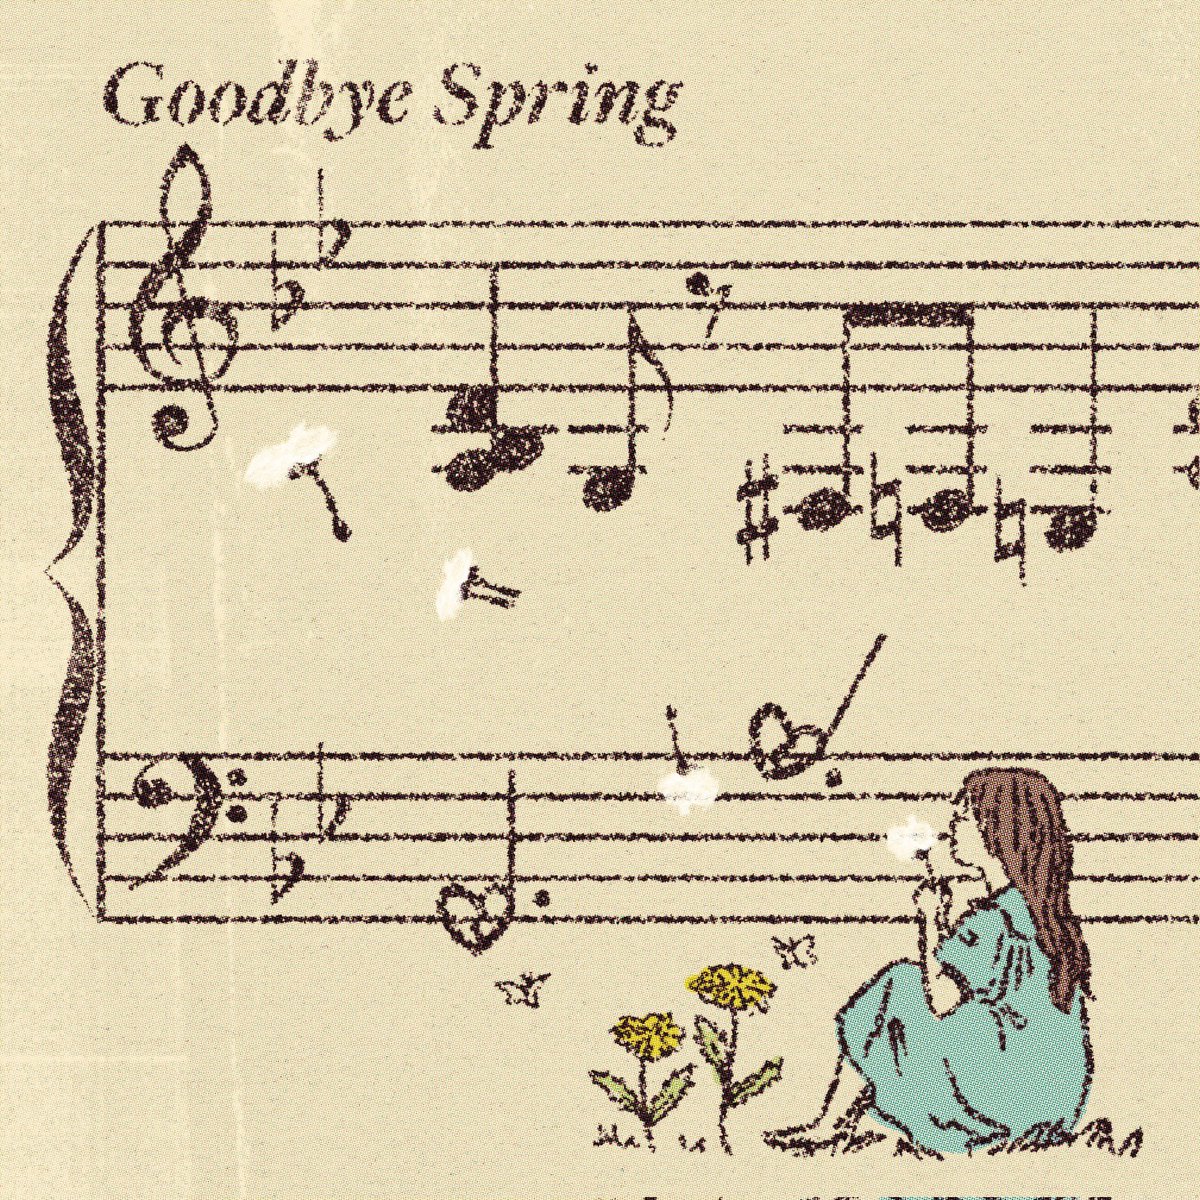 이진아, 손성희 Shi Shi DS [필요 없는 봄날씨 (Goodbye Spring)]
李珍雅, 孫盛希 數位單曲 [필요 없는 봄날씨 (Goodbye Spring)]

Lyrics by 이진아, Shi Shi
Composed by 이진아, Shi Shi,안광현
Arranged by 이진아, 안광현

🔗youtu.be/5h9KTbyLAlA?fe…

#LeeJinAh #이진아 #ShiShi #GoodbyeSpring